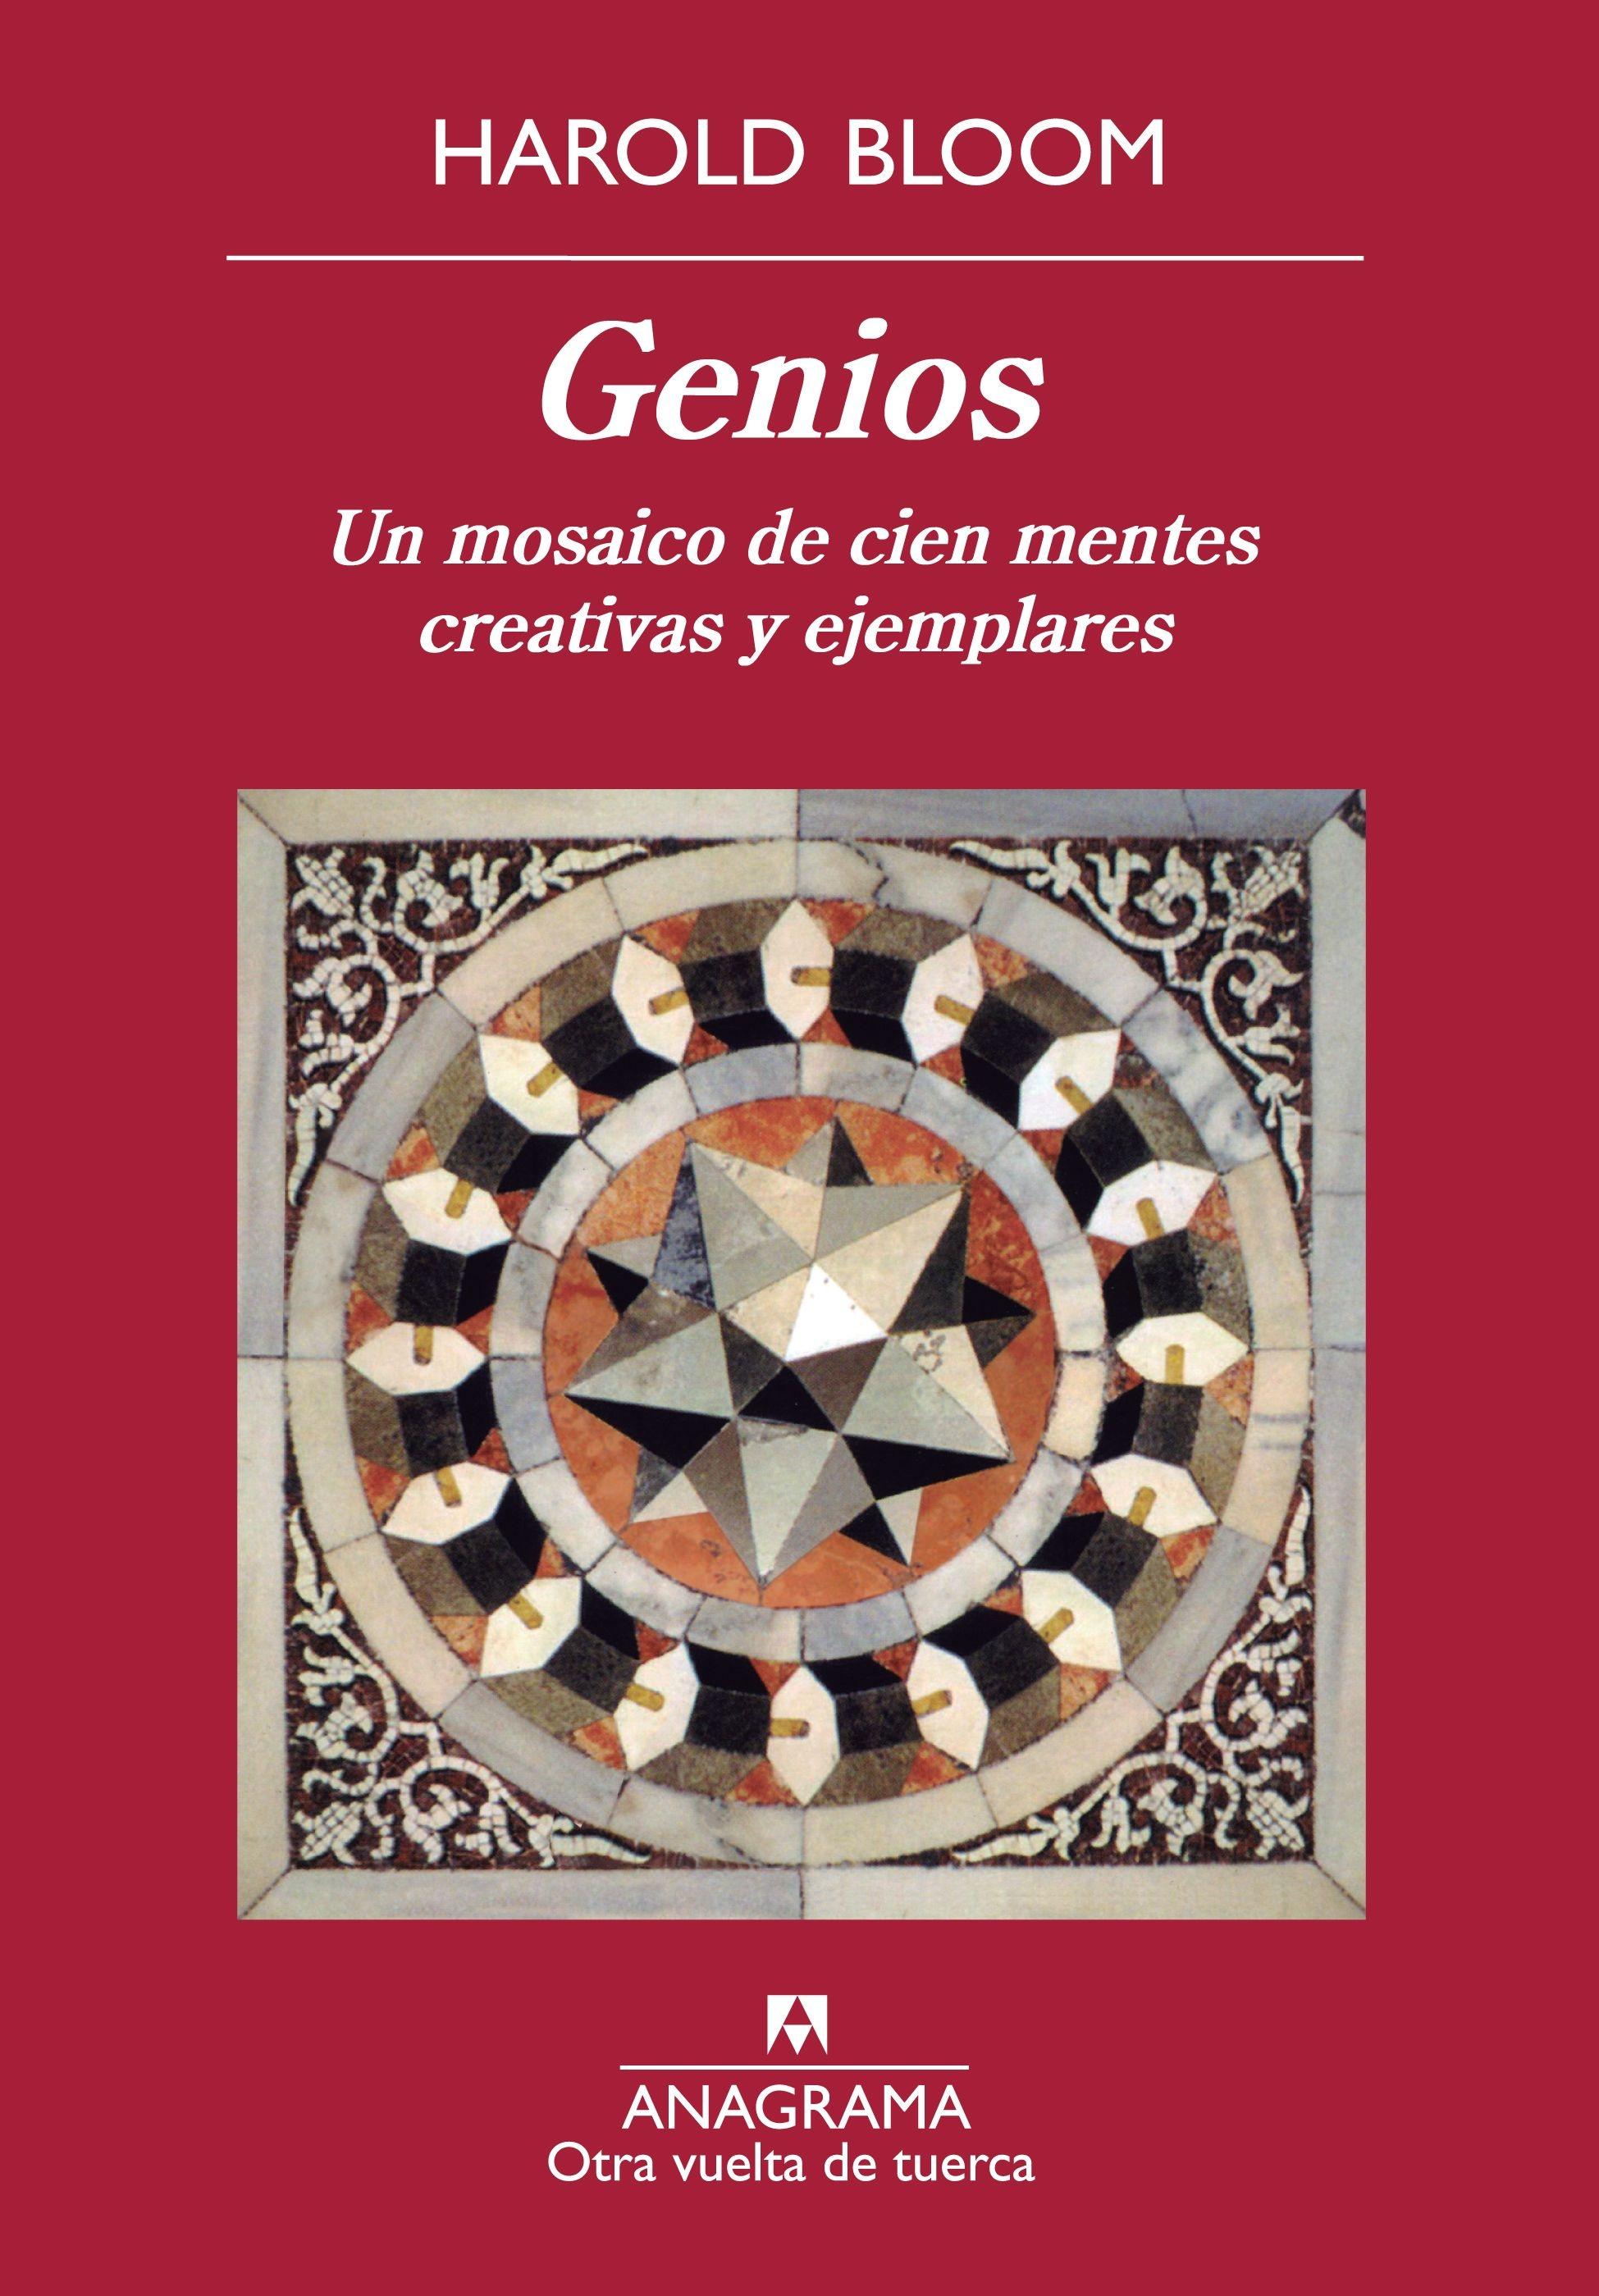 Genios. Un mosaico de cien mentes creativas y ejemplares "Un mosaico de cien mentes creativas y ejemplares". 